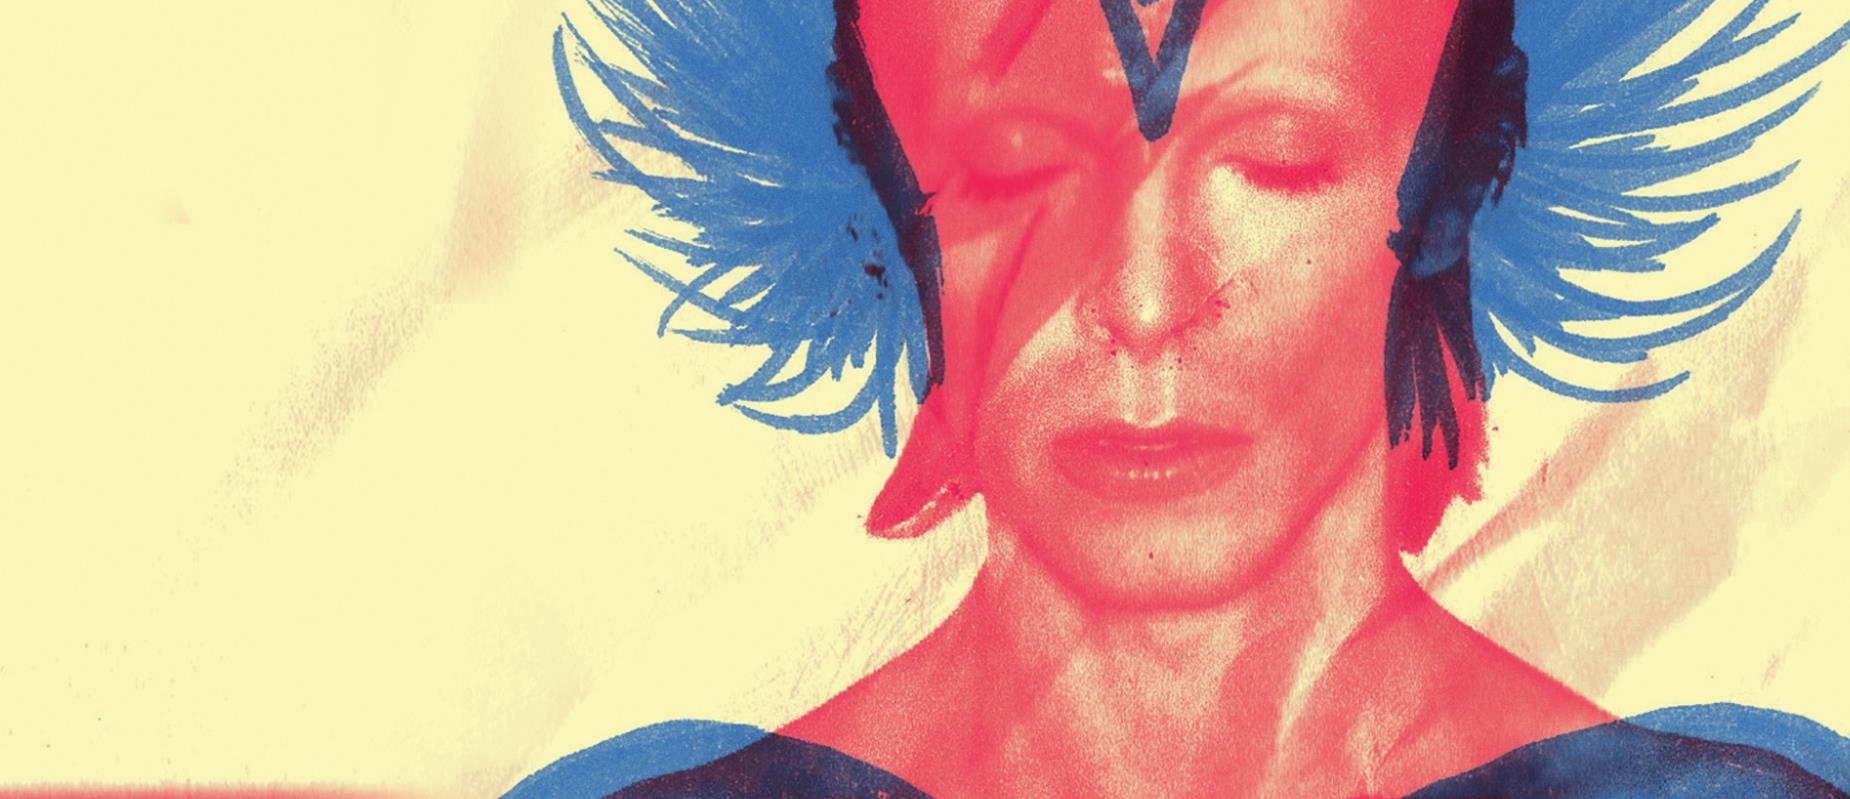 Bloco Tô de Bowie 2016